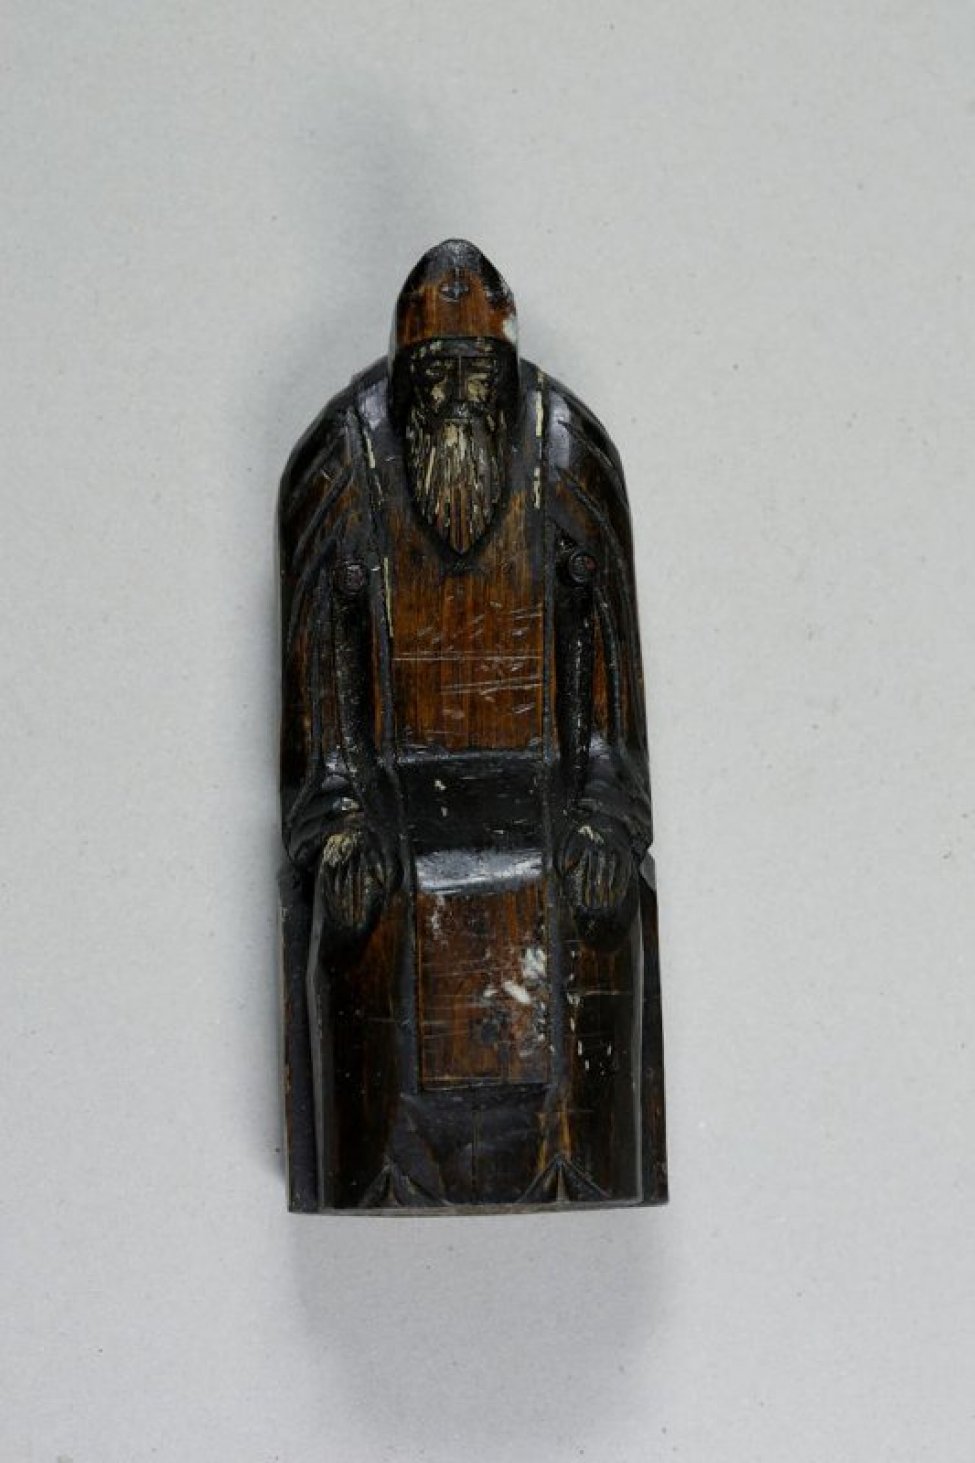 Скульптура вырезана из цельного куска дерева. Святой изображен с длинной бородой, впалыми щеками,низко опущенной головой, в монашеских одеждах. Изображен сидящим в высоком кресле, руки лежат параллельно на полусогнутых коленях.